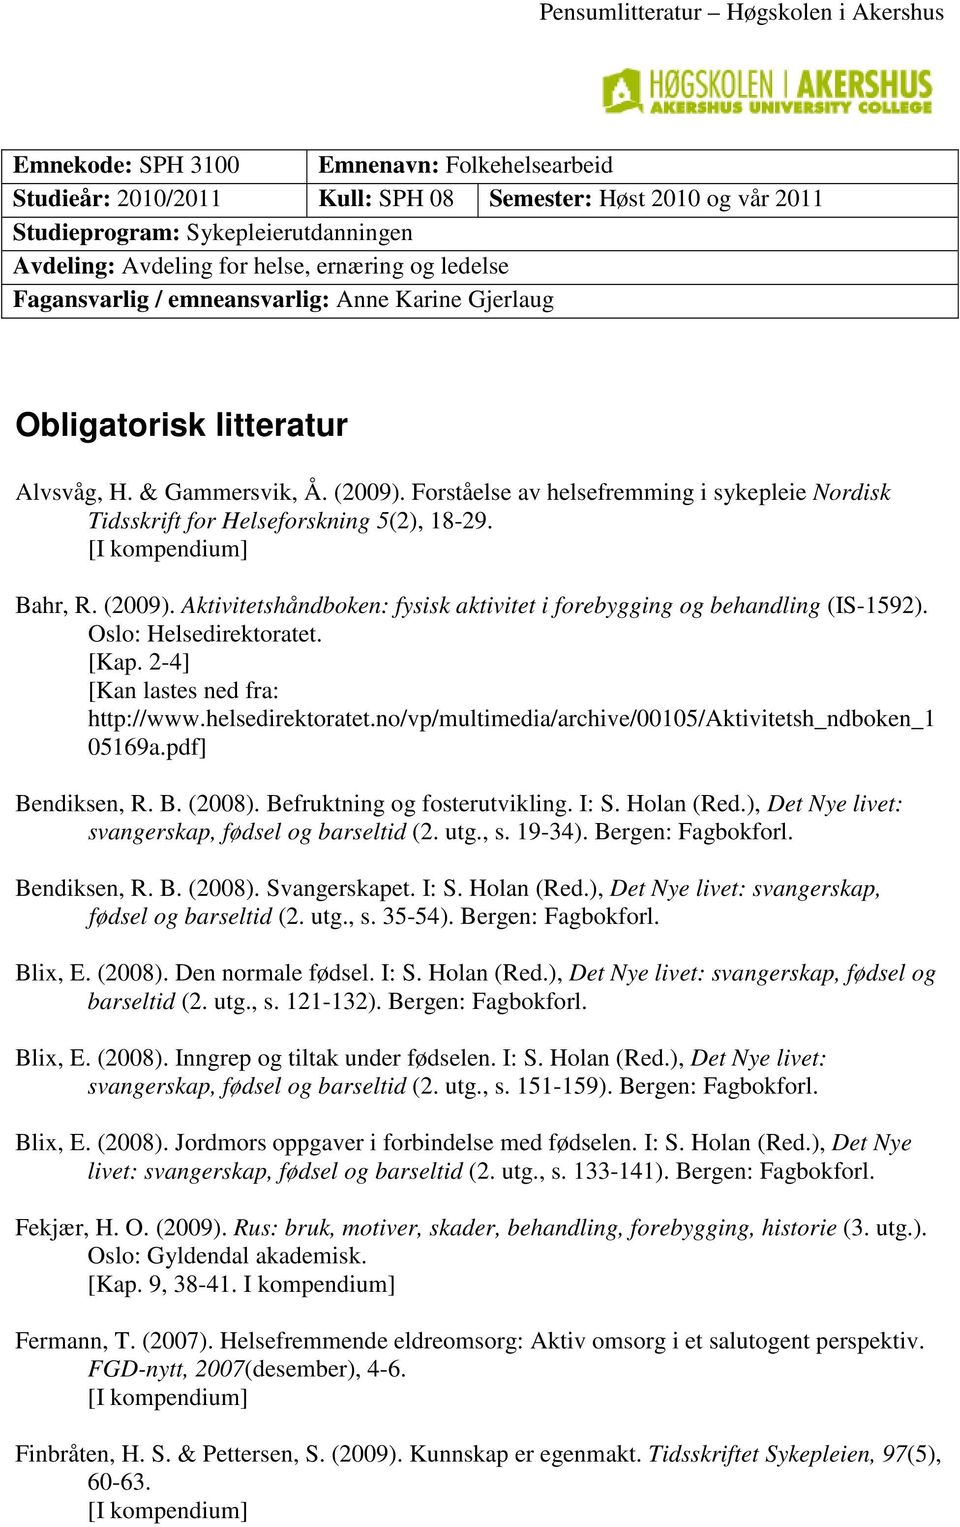 Forståelse av helsefremming i sykepleie Nordisk Tidsskrift for Helseforskning 5(2), 18-29. Bahr, R. (2009). Aktivitetshåndboken: fysisk aktivitet i forebygging og behandling (IS-1592).